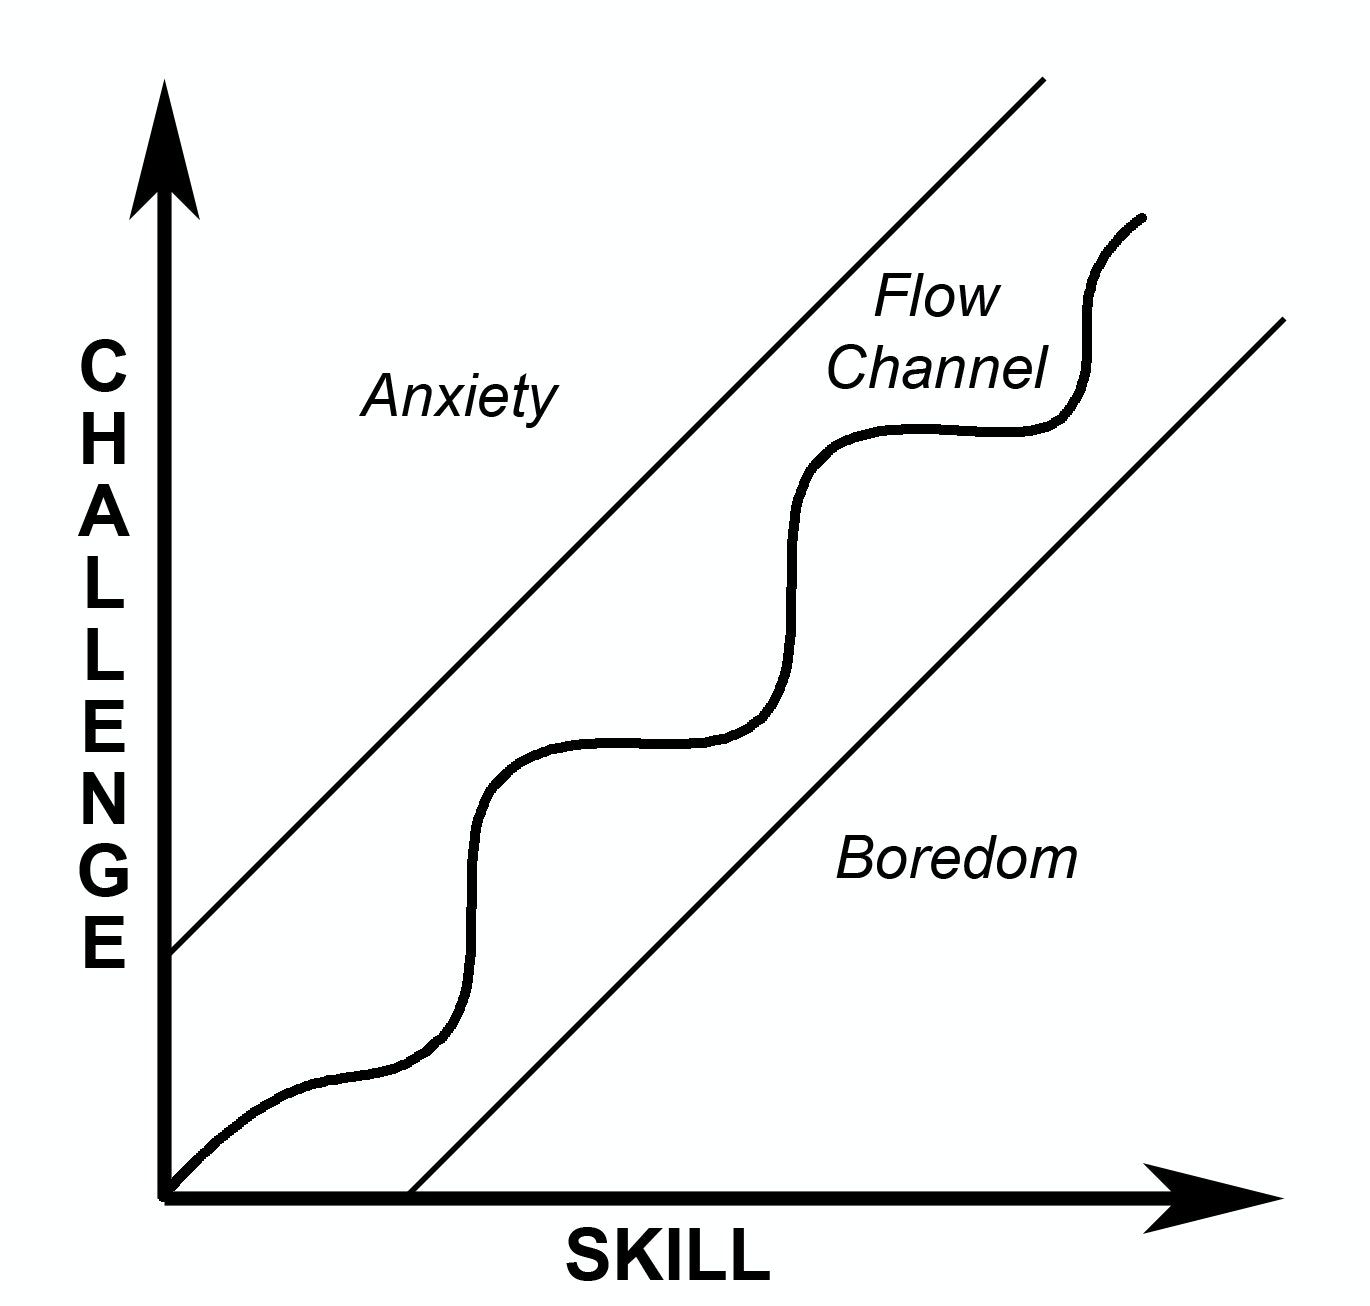 Challenge vs Skill for Flow